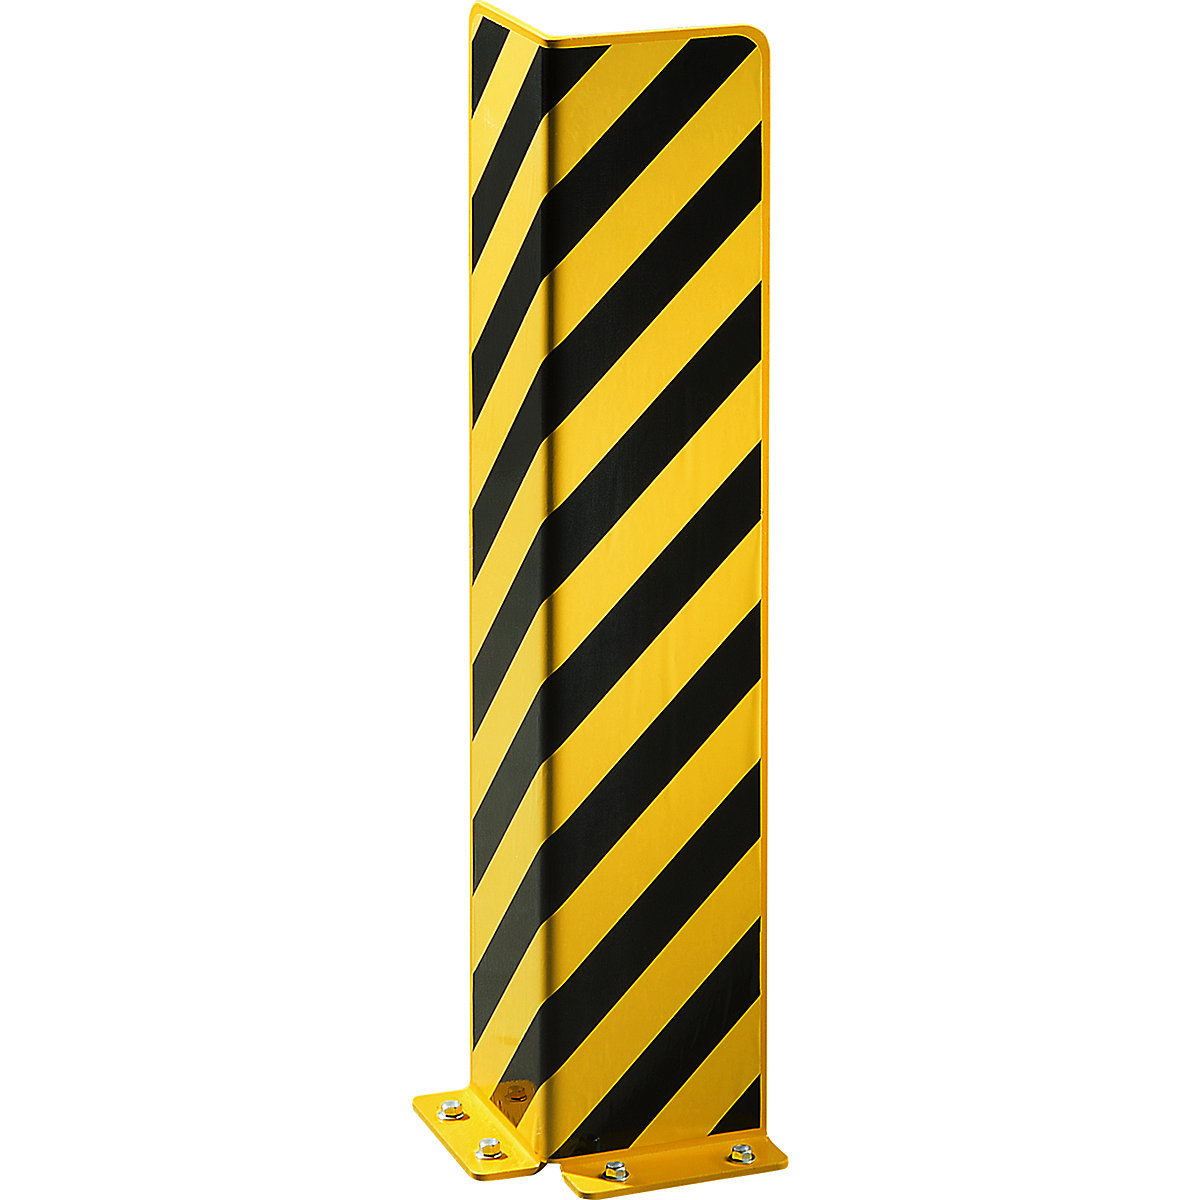 Anfahrschutz aus Stahl, L-Profil, schwarz / gelb, Höhe 800 mm